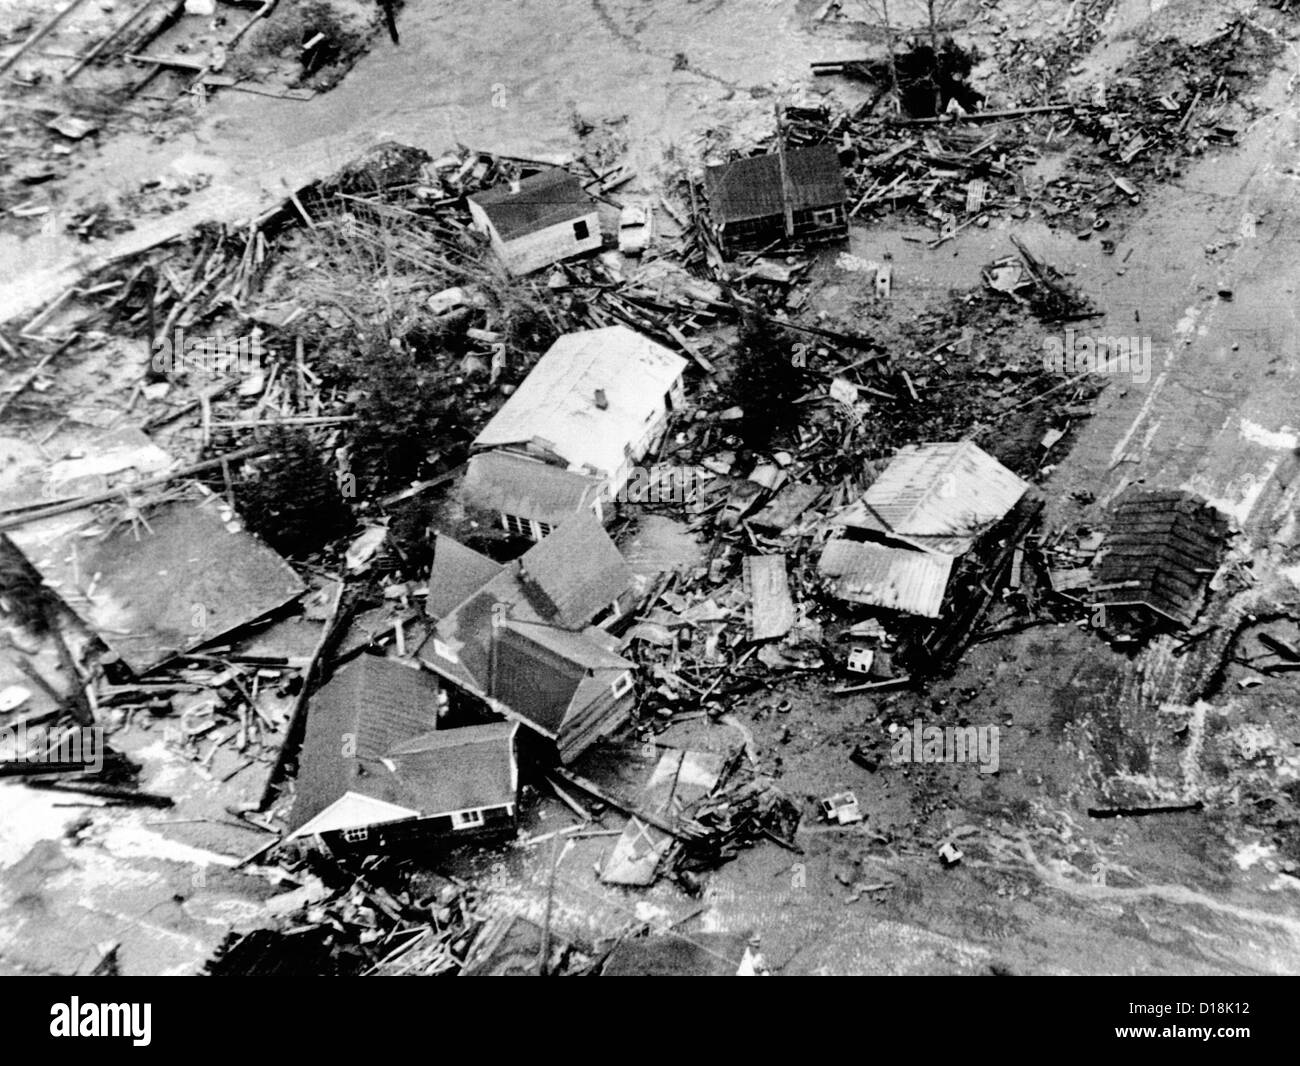 1964 Alaska terremoto. 30 piedi di alta marea causato dalla 9.2 terremoto ha distrutto la bassa zone pianeggianti della città costiera di Foto Stock